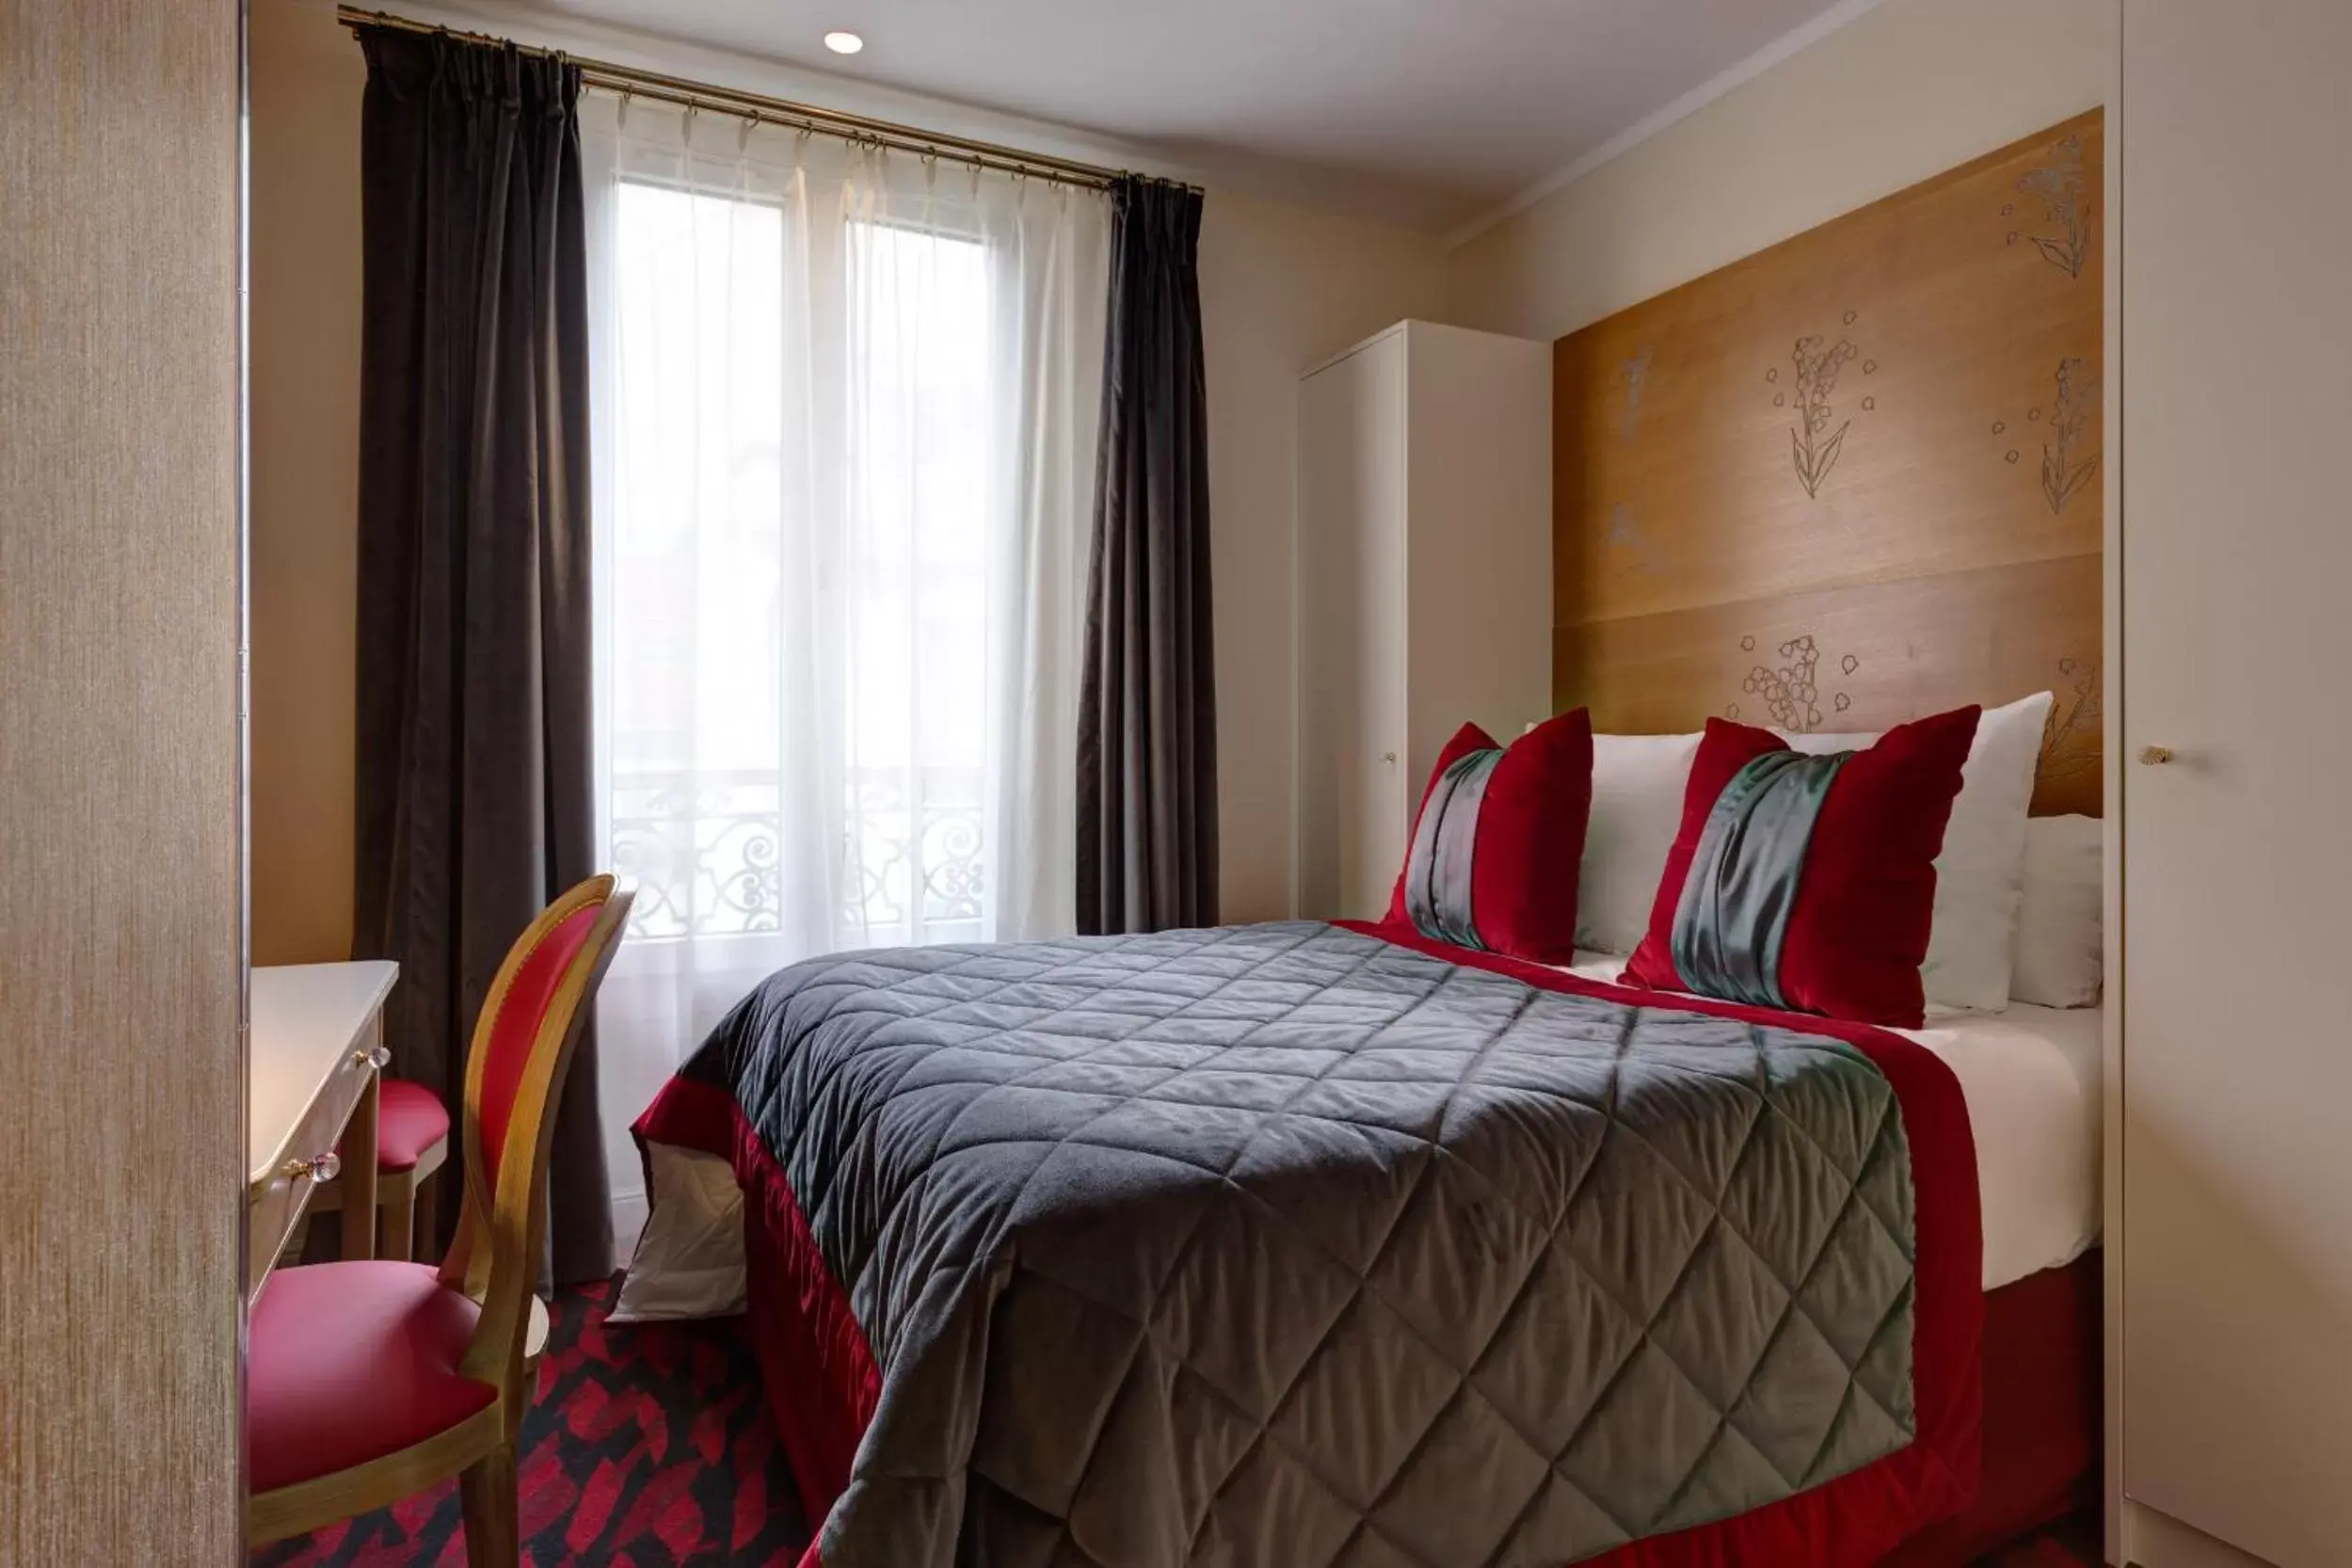 Bedroom, Room Photo in Hotel Muguet